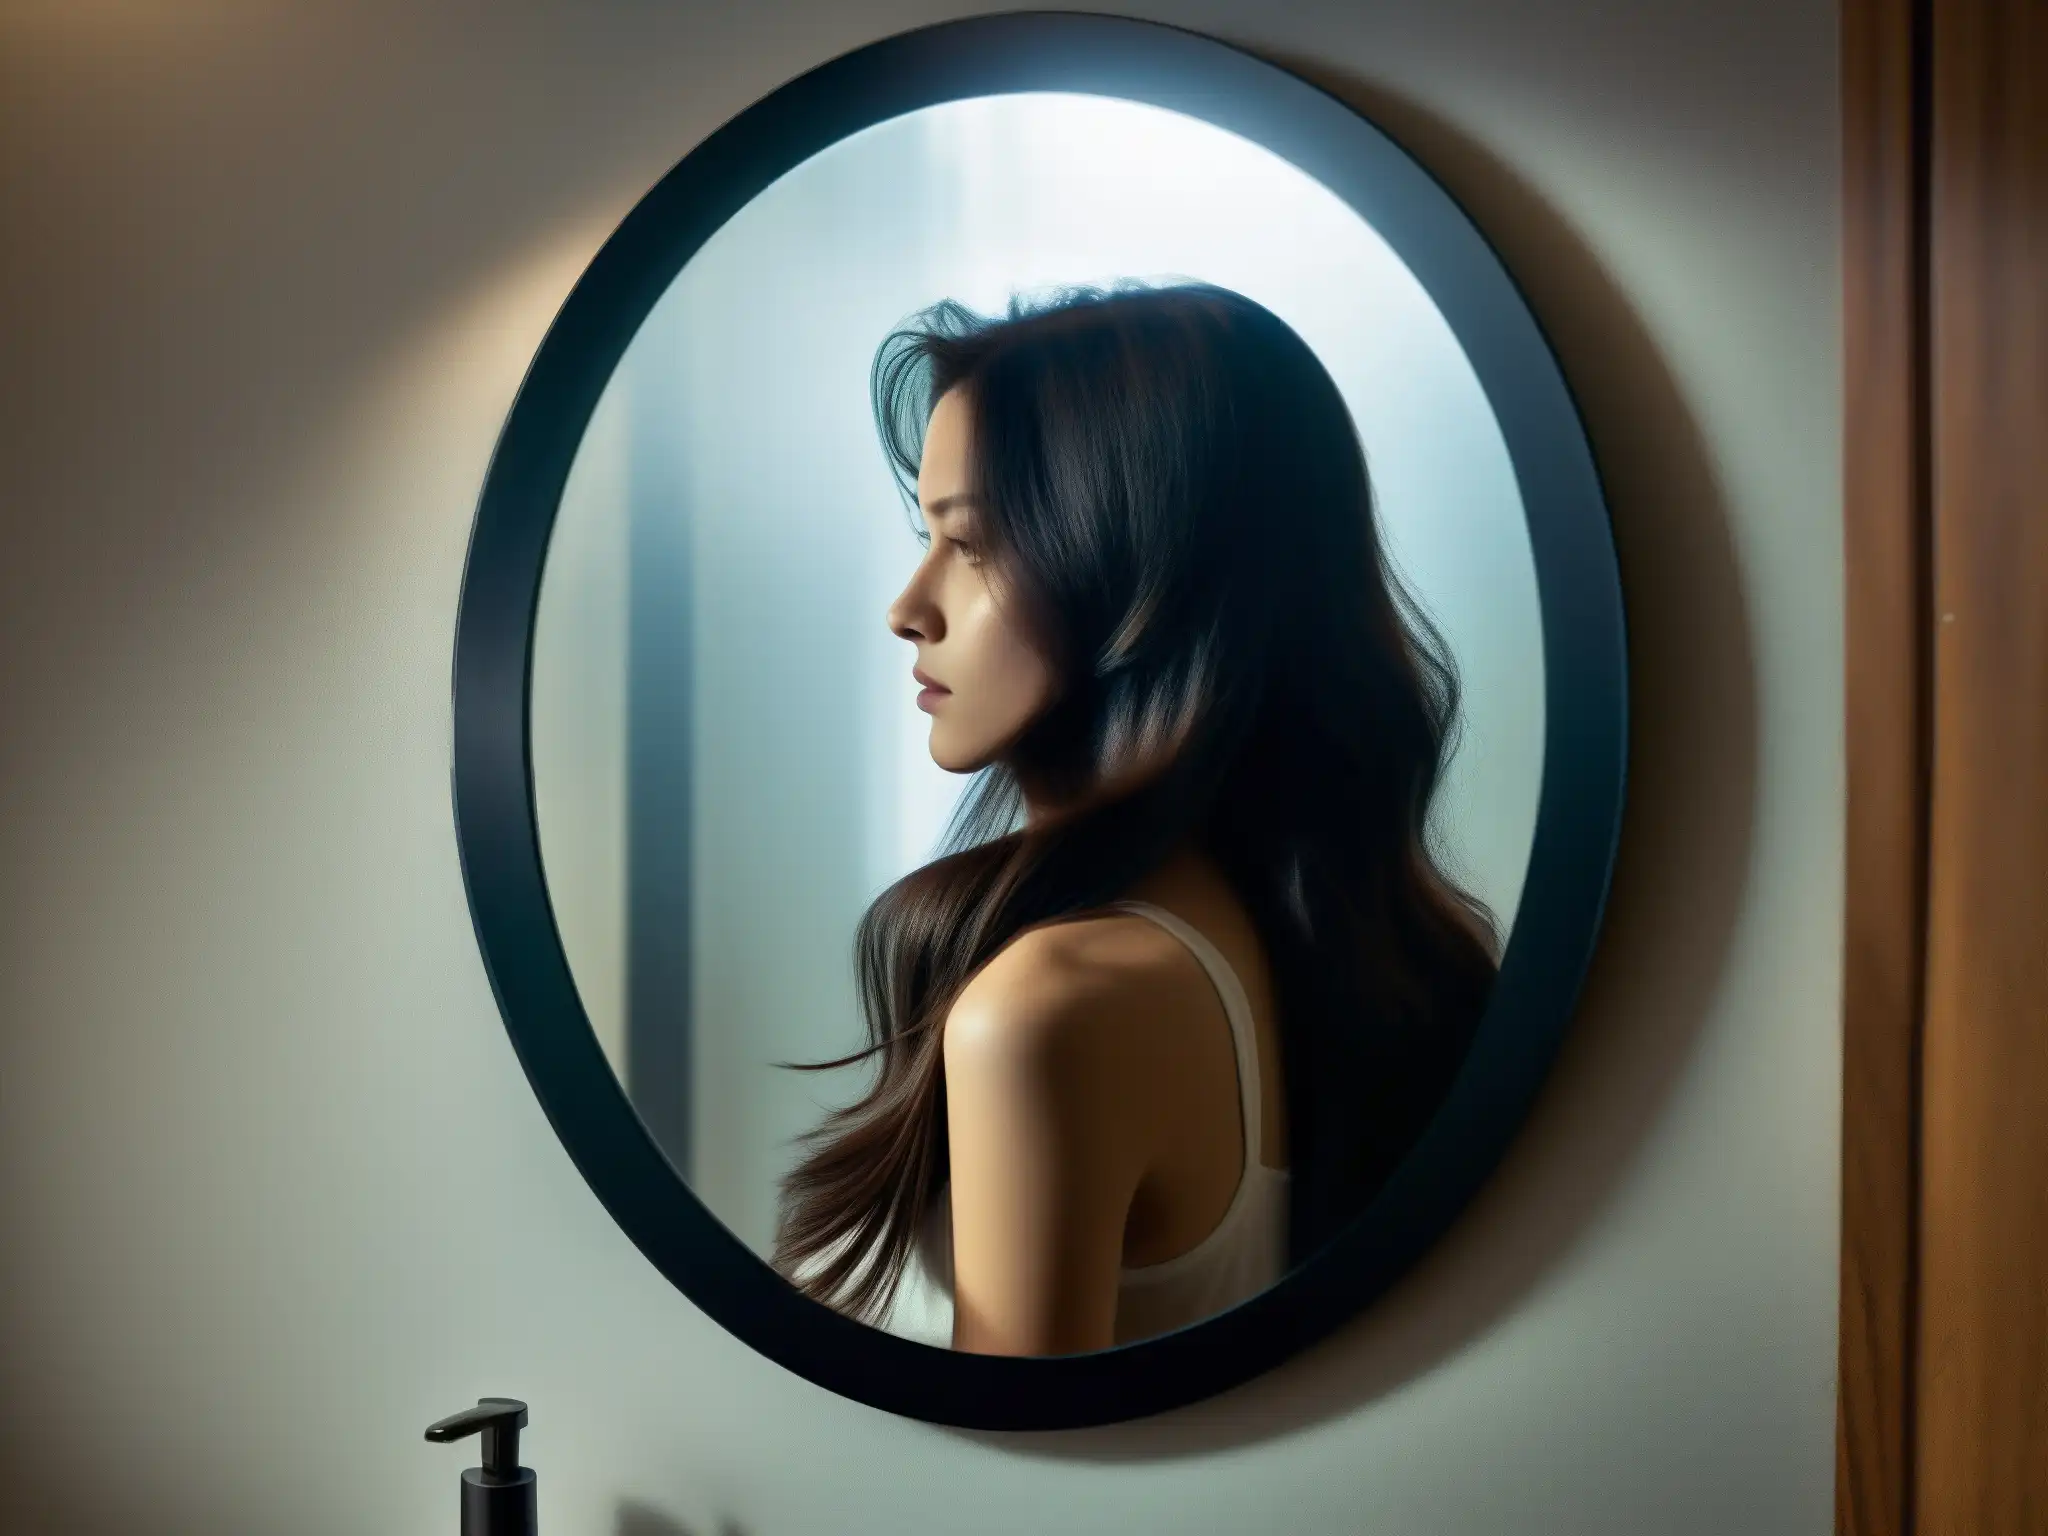 En la tenue luz del baño, el espejo refleja la silueta inquietante de una mujer con cabello largo, creando un ambiente misterioso y perturbador